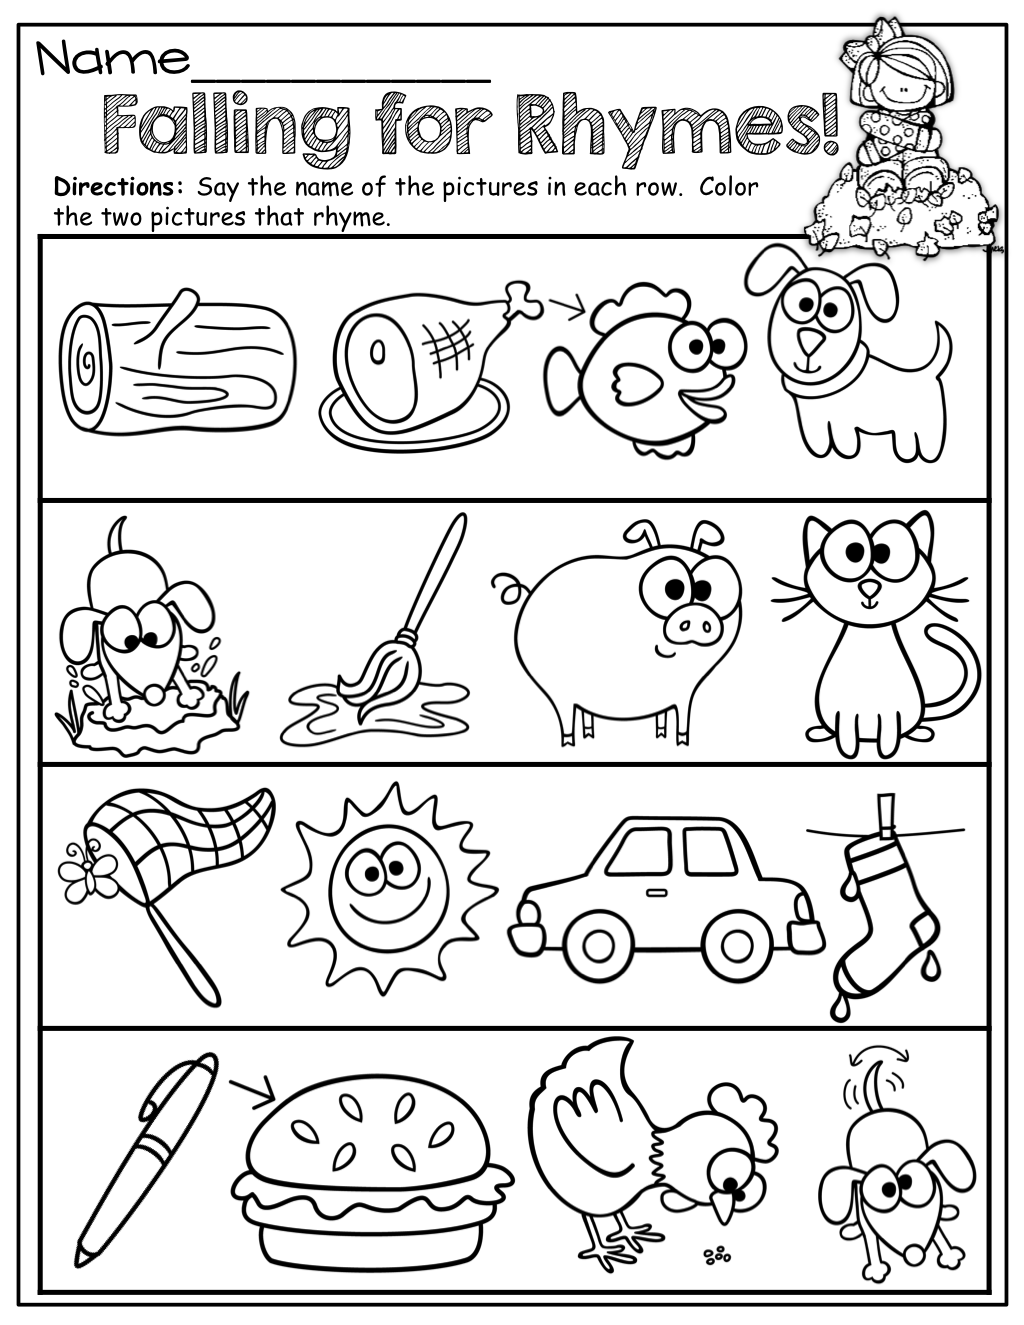 Rhyming Worksheets Kindergarten Free Words School Worksheets Samples